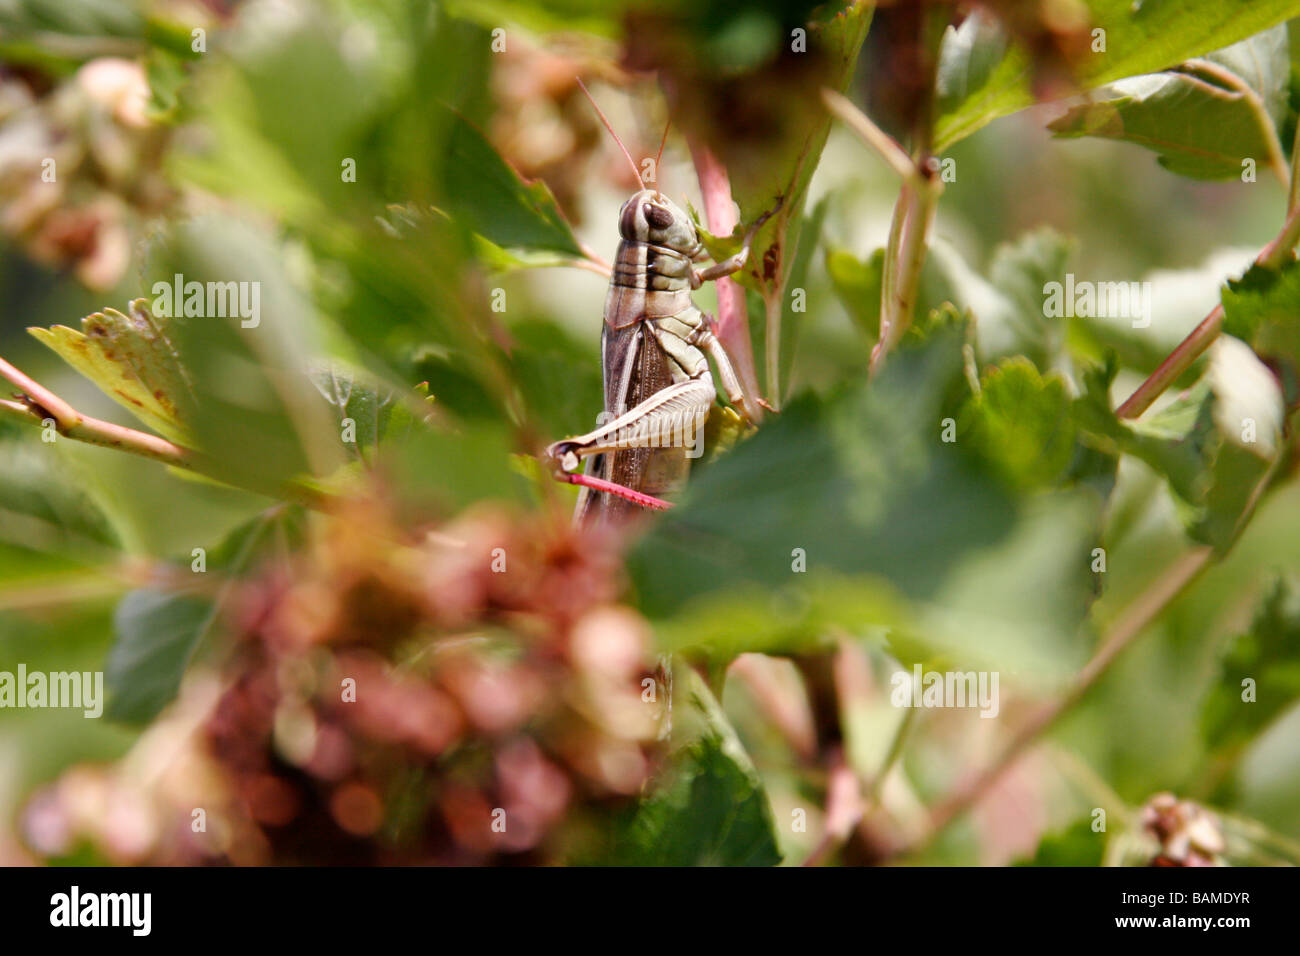 A grasshopper feeding on a tree leaf Stock Photo